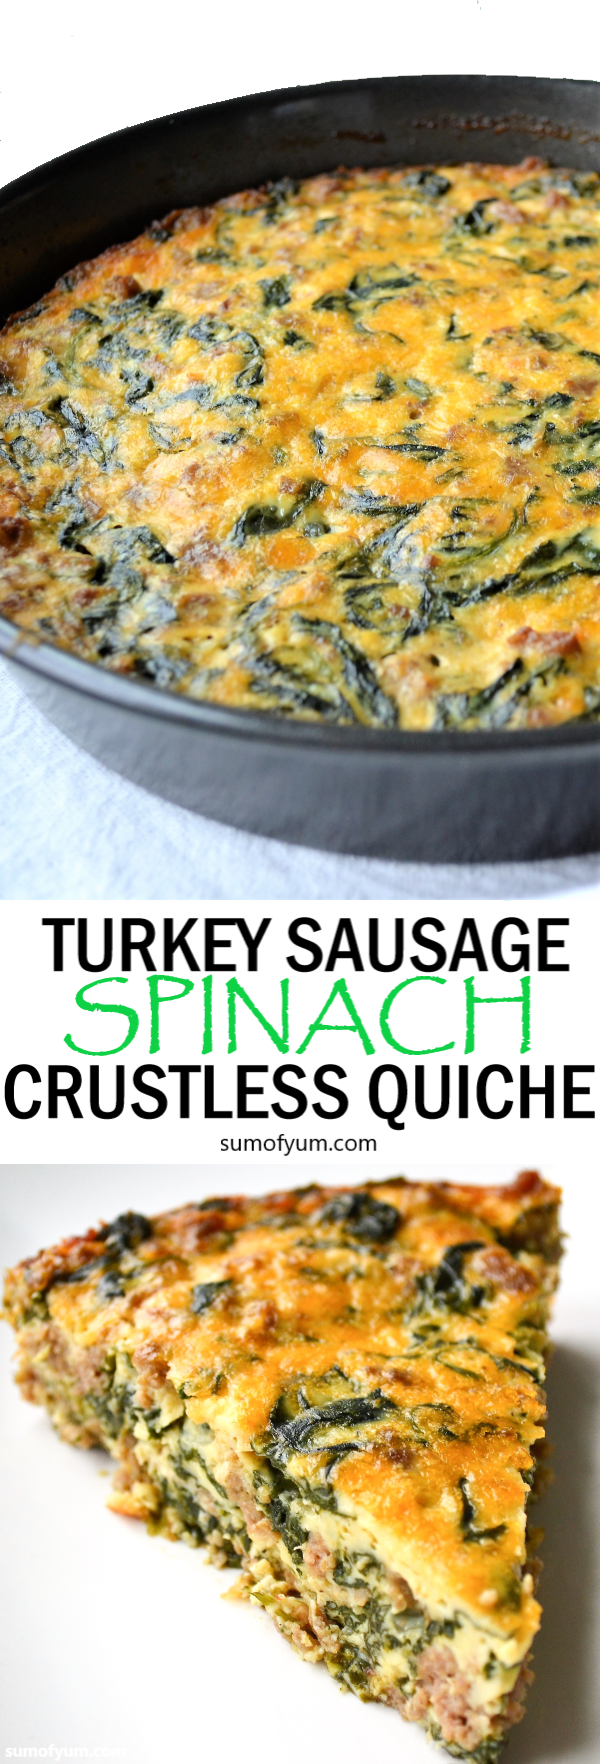 Turkey Sausage and Spinach Crustless Quiche